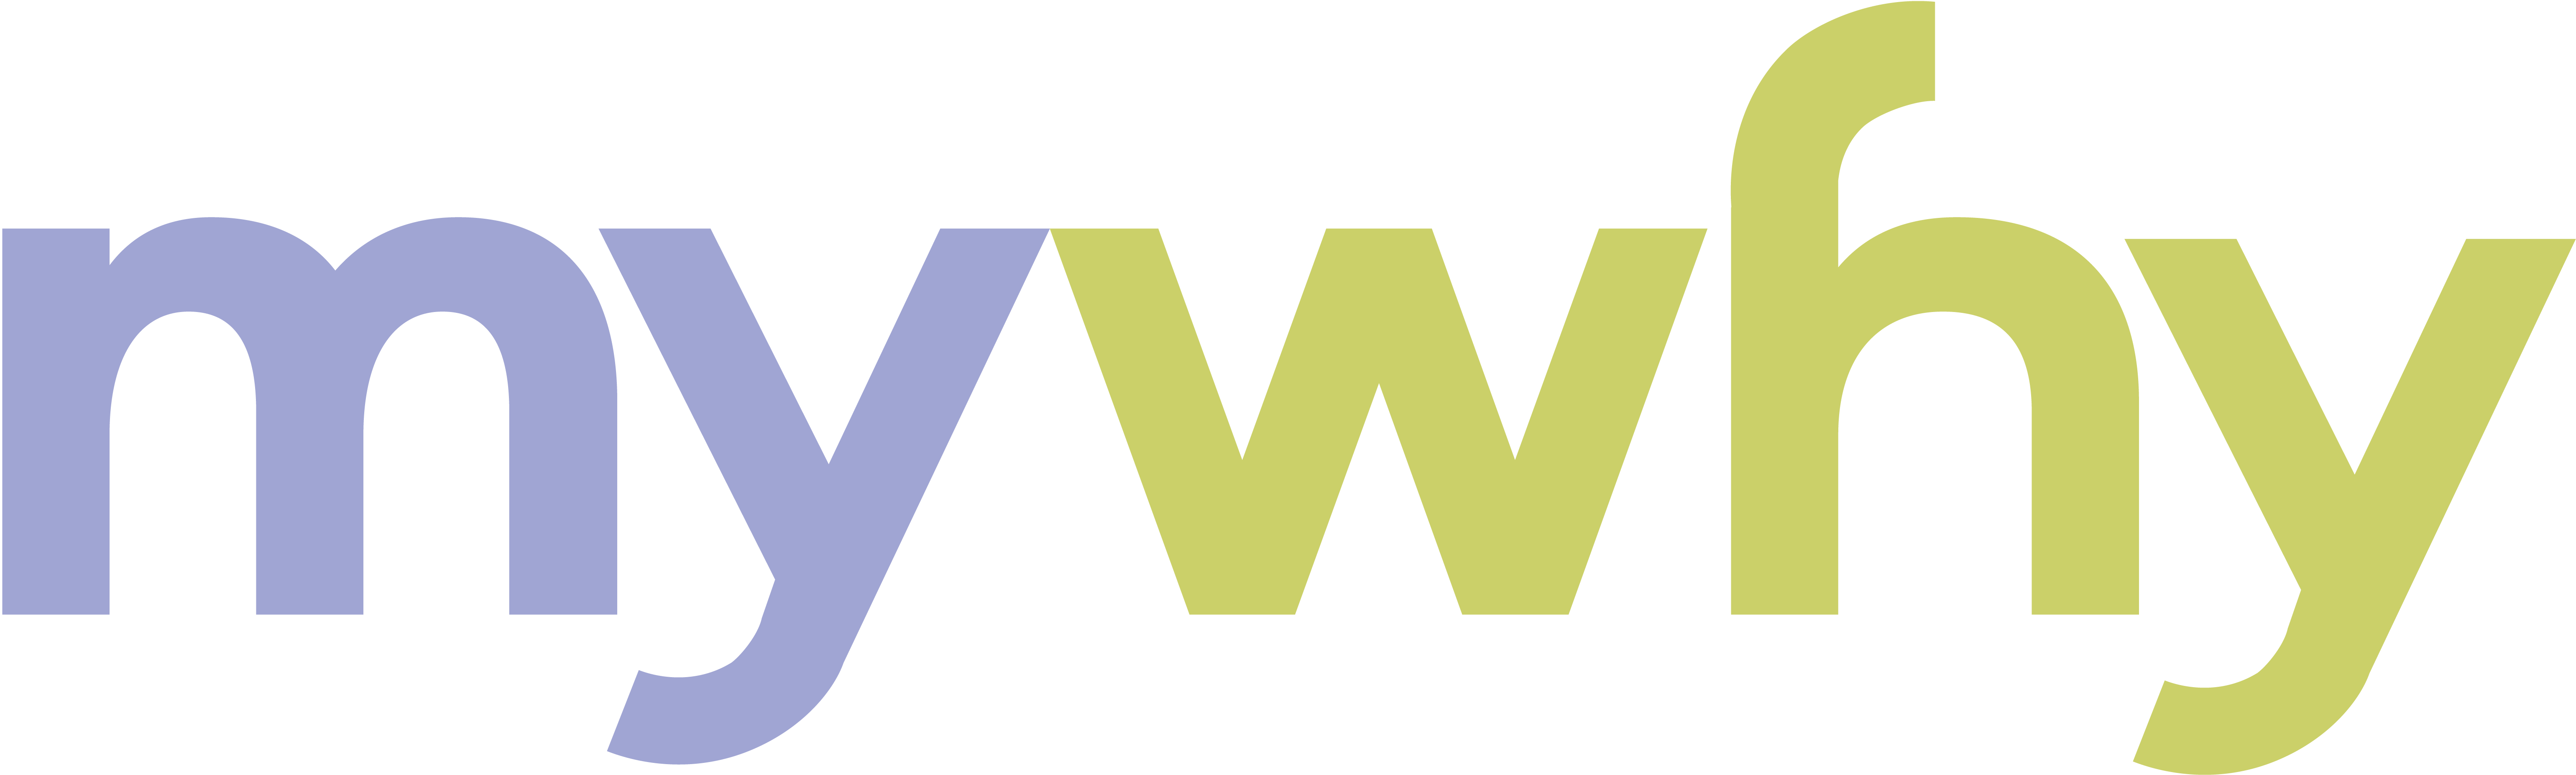 LL-mywhy logo